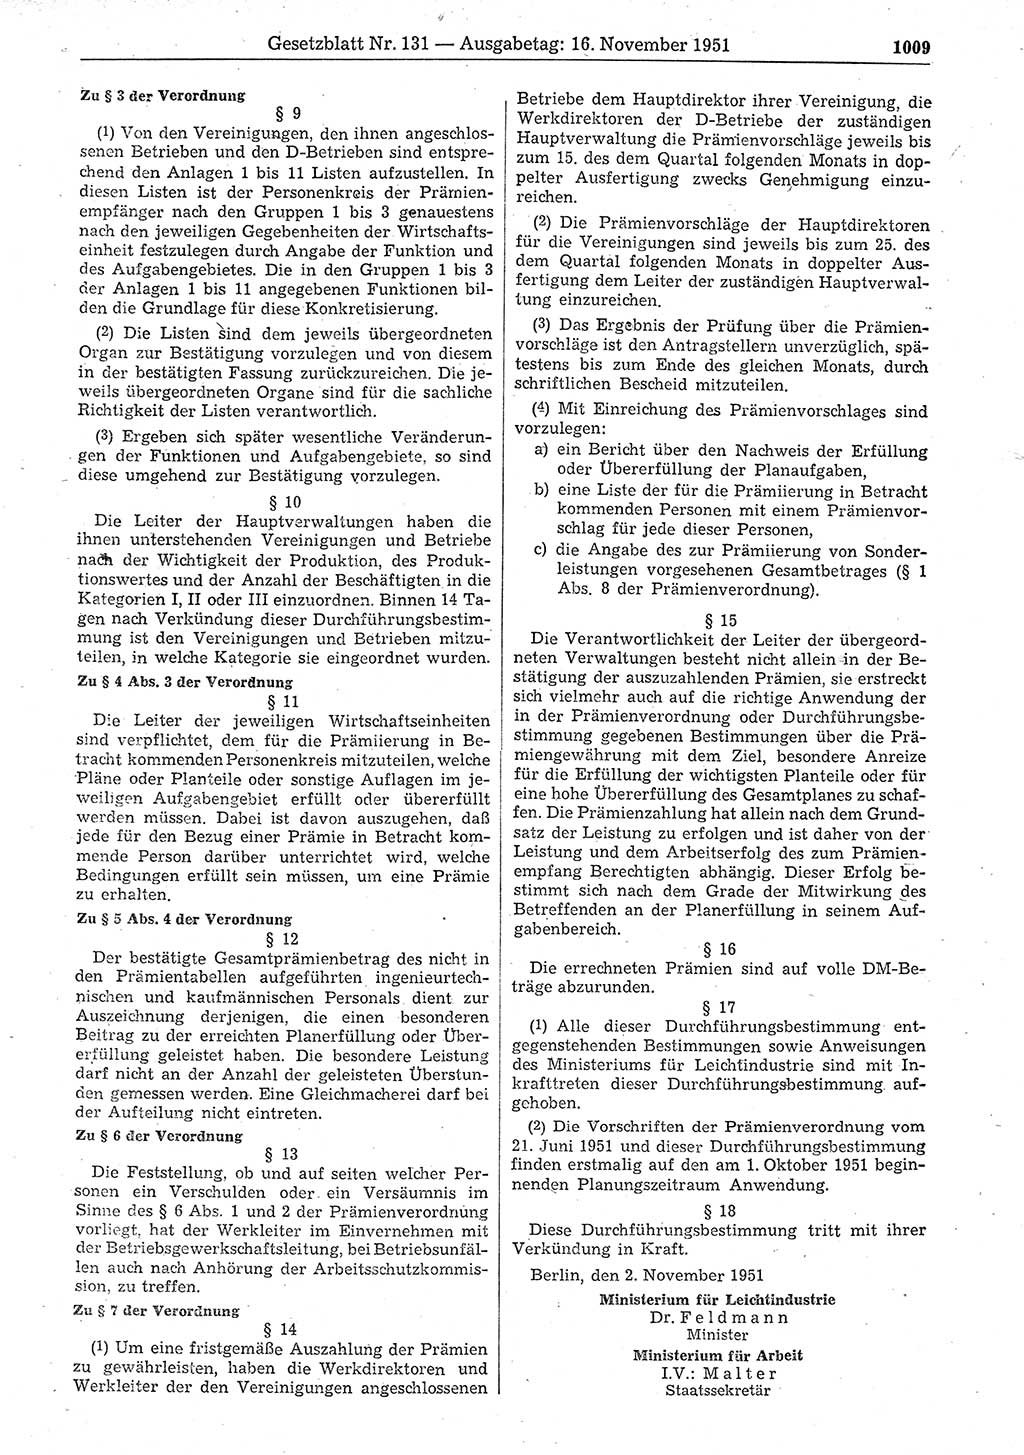 Gesetzblatt (GBl.) der Deutschen Demokratischen Republik (DDR) 1951, Seite 1009 (GBl. DDR 1951, S. 1009)